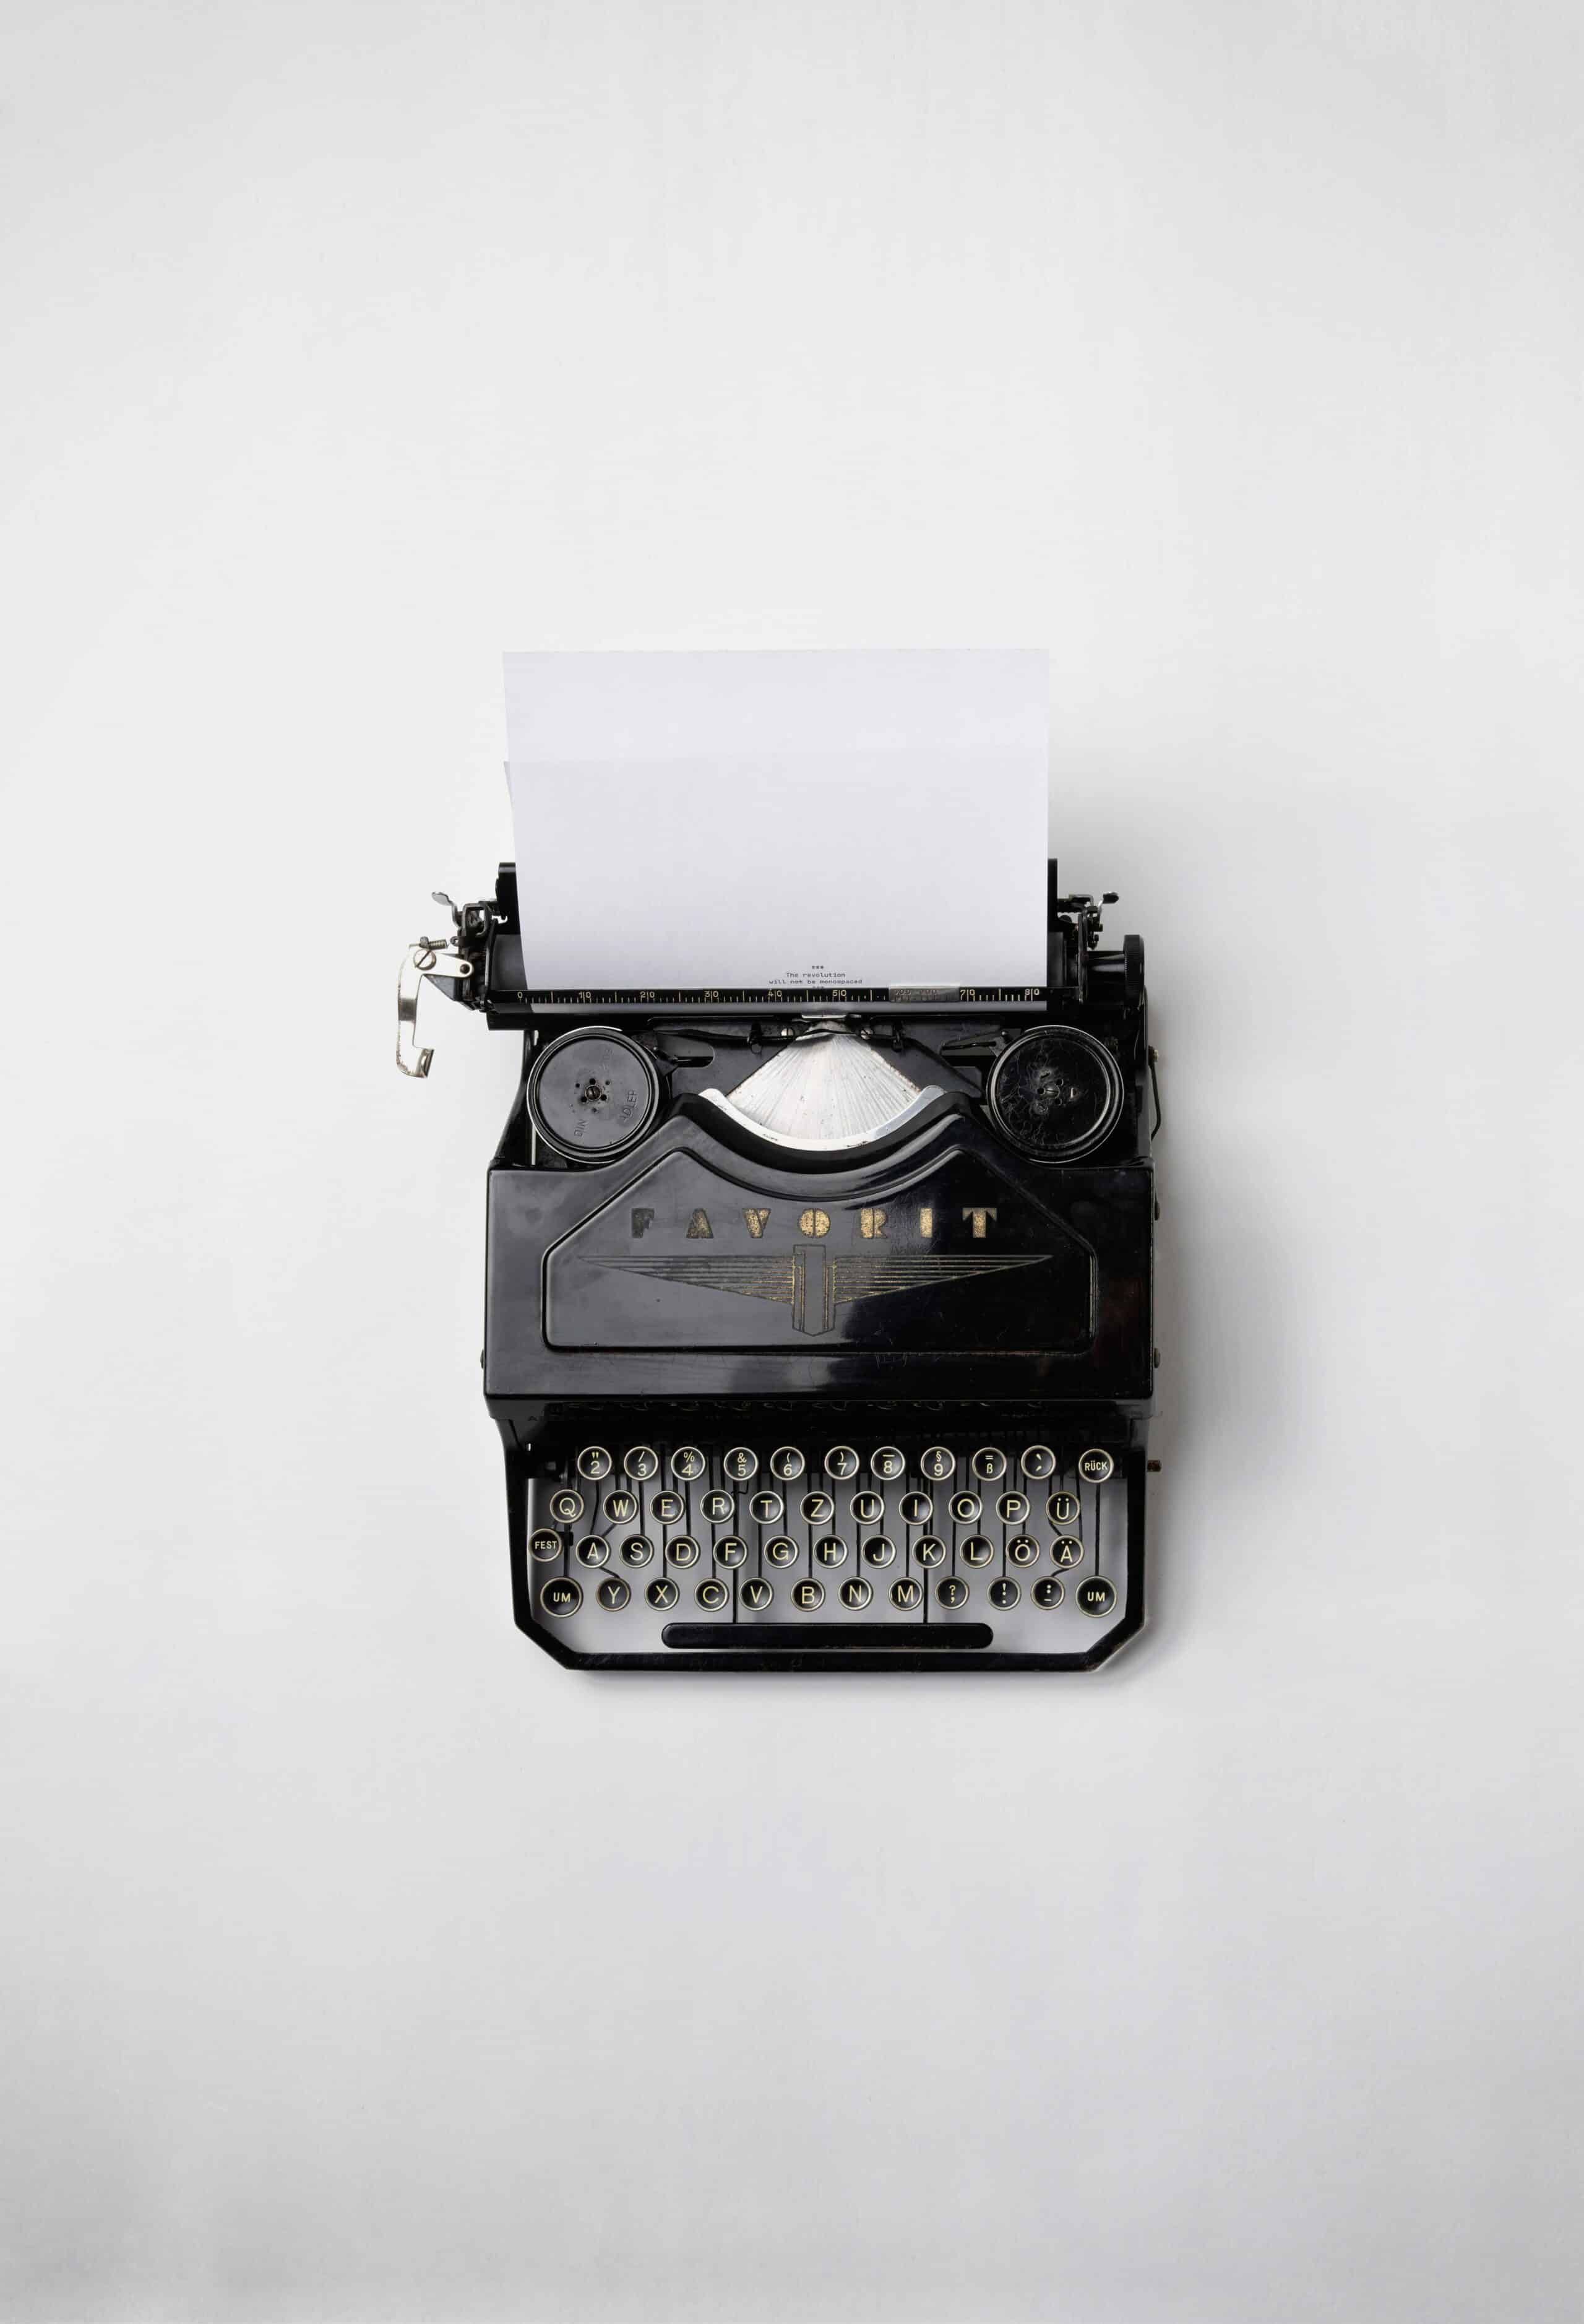 Typewriter. [Photo by Florian Klauer on Unsplash]